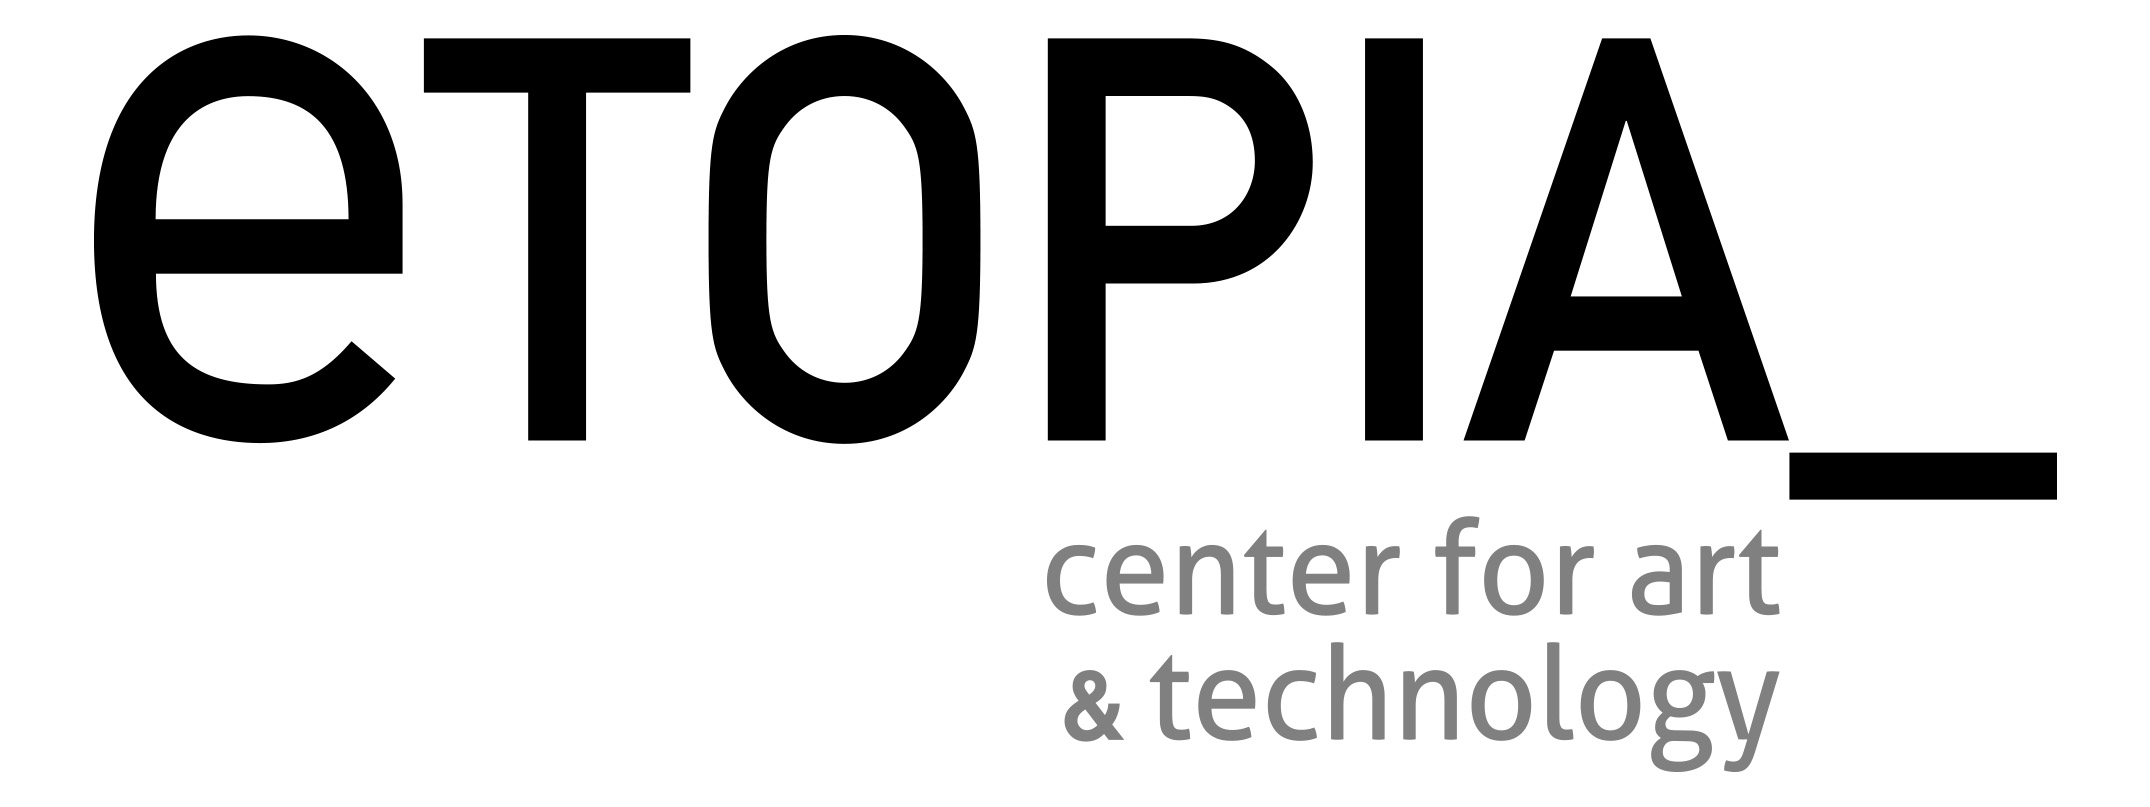 Etopia logo